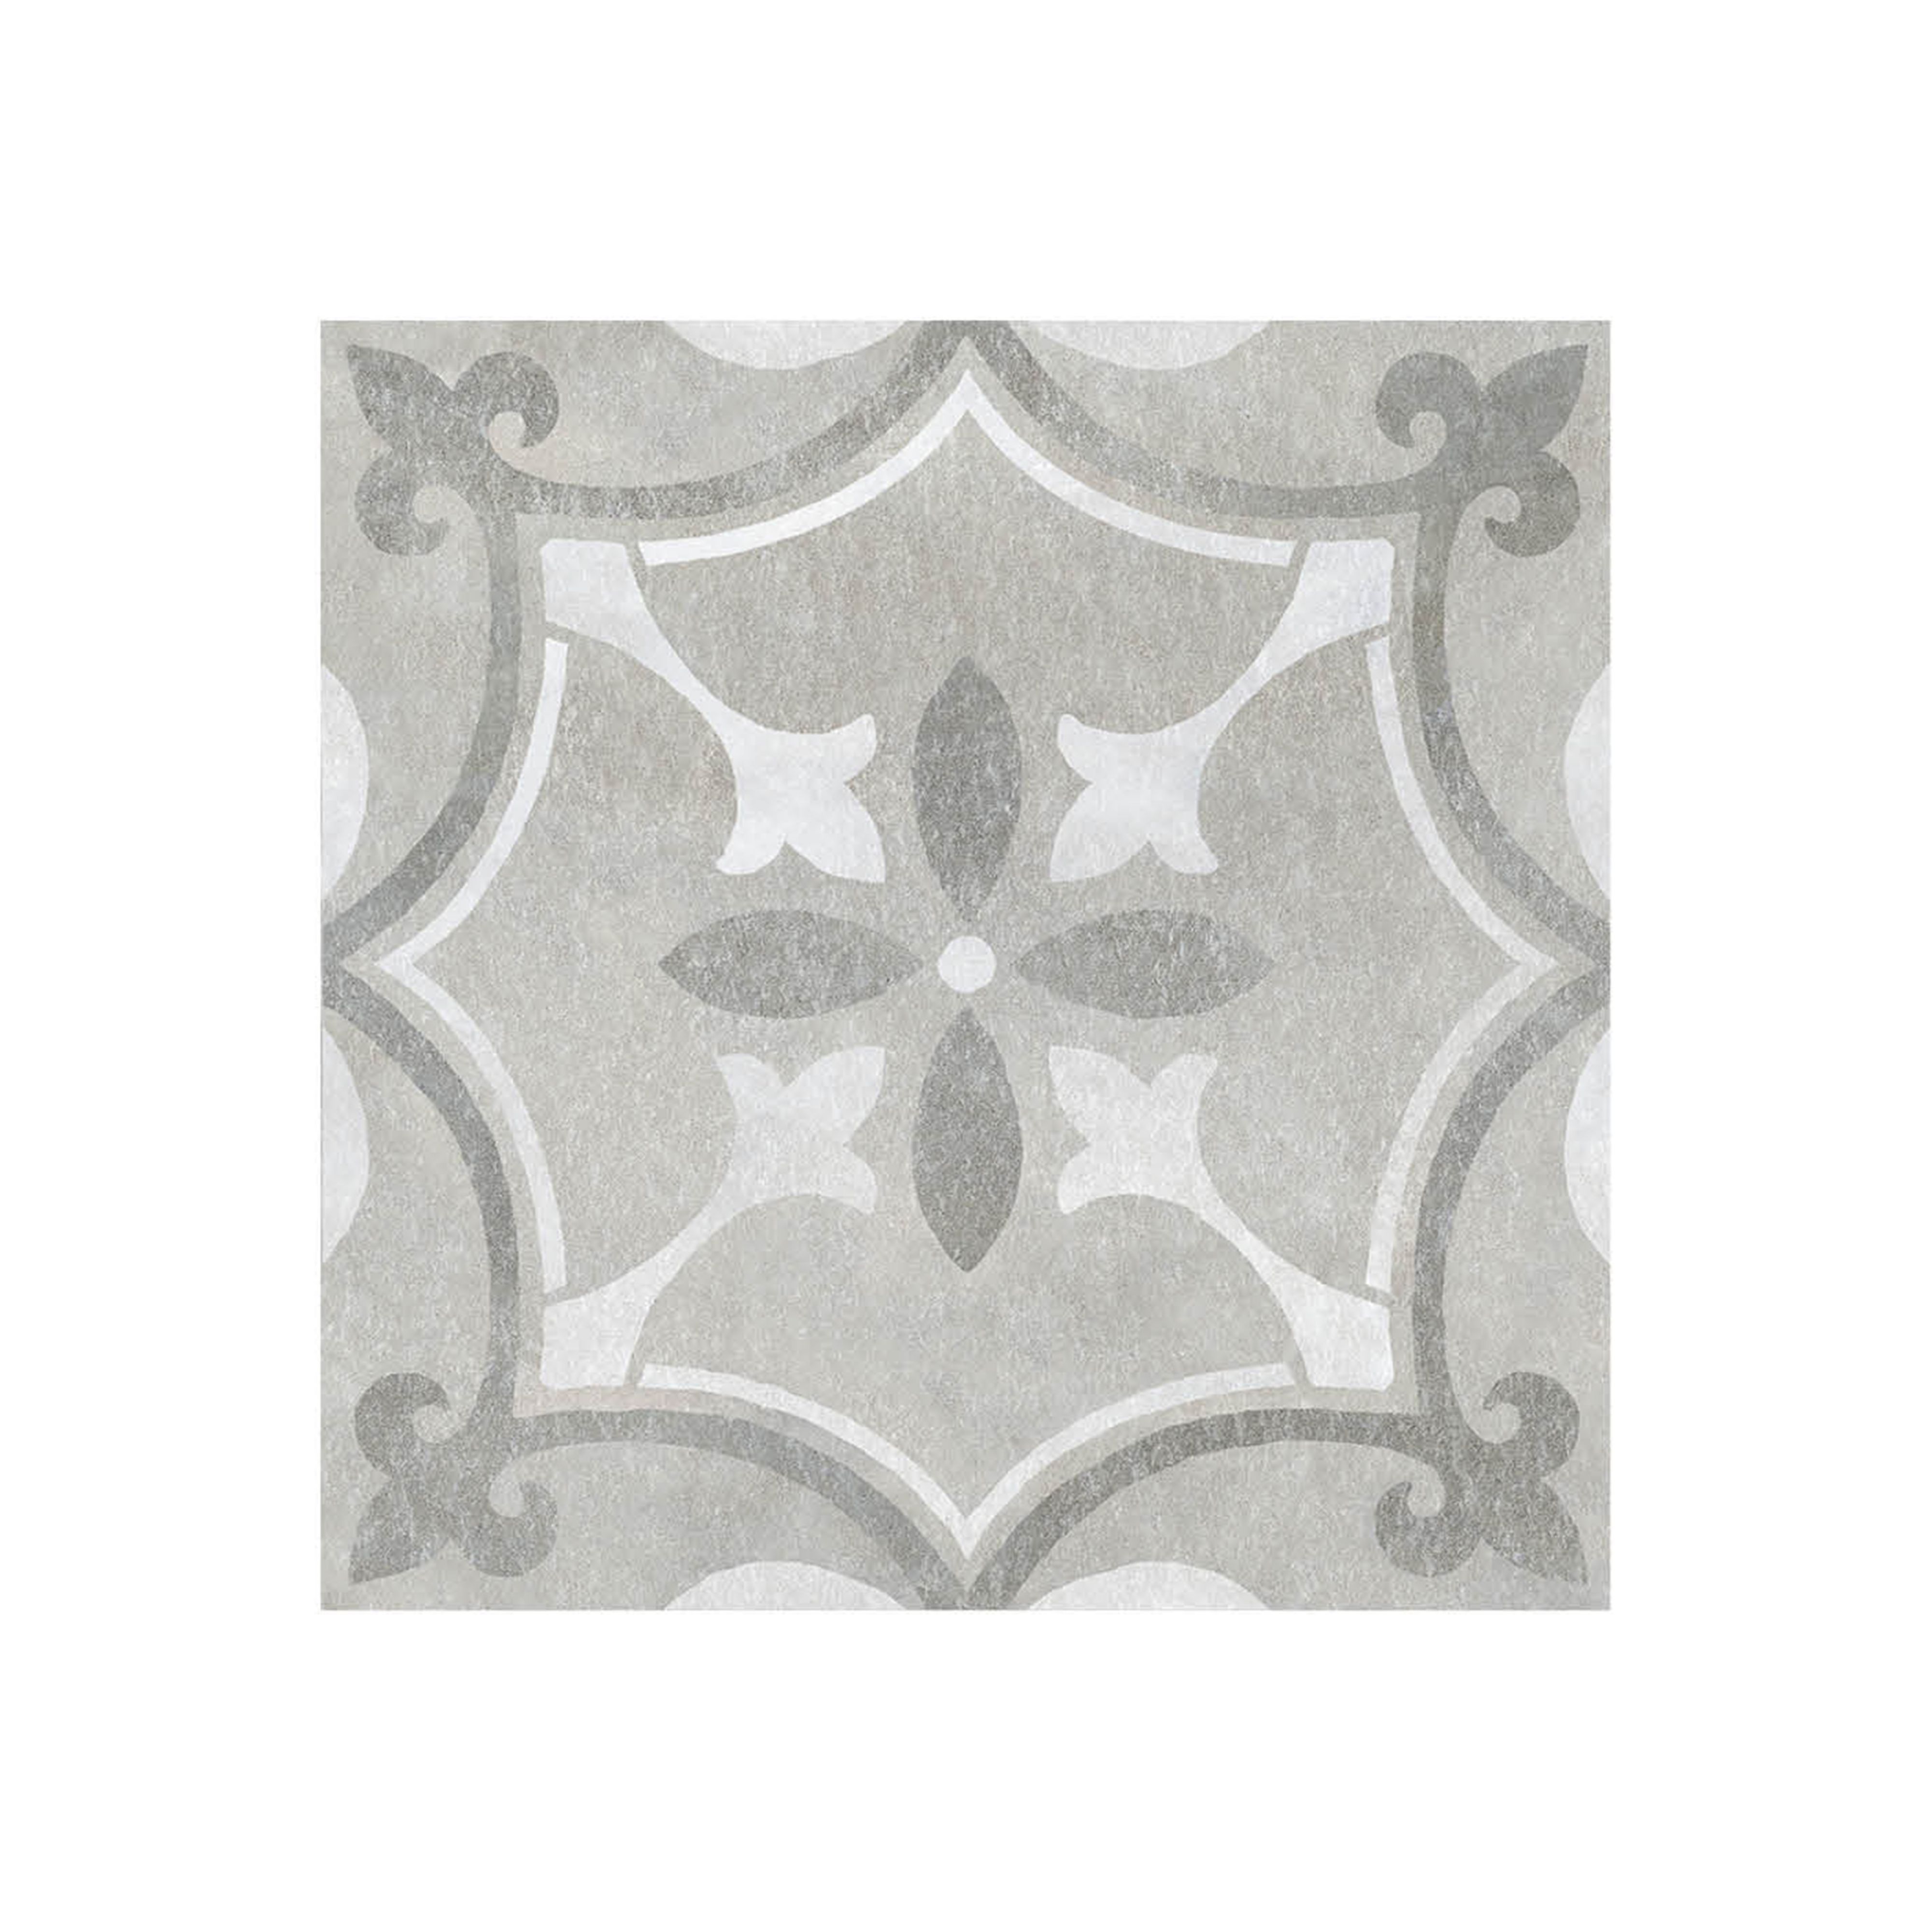 Perla Grey Matt Patterned Stone effect Ceramic Indoor Wall & floor